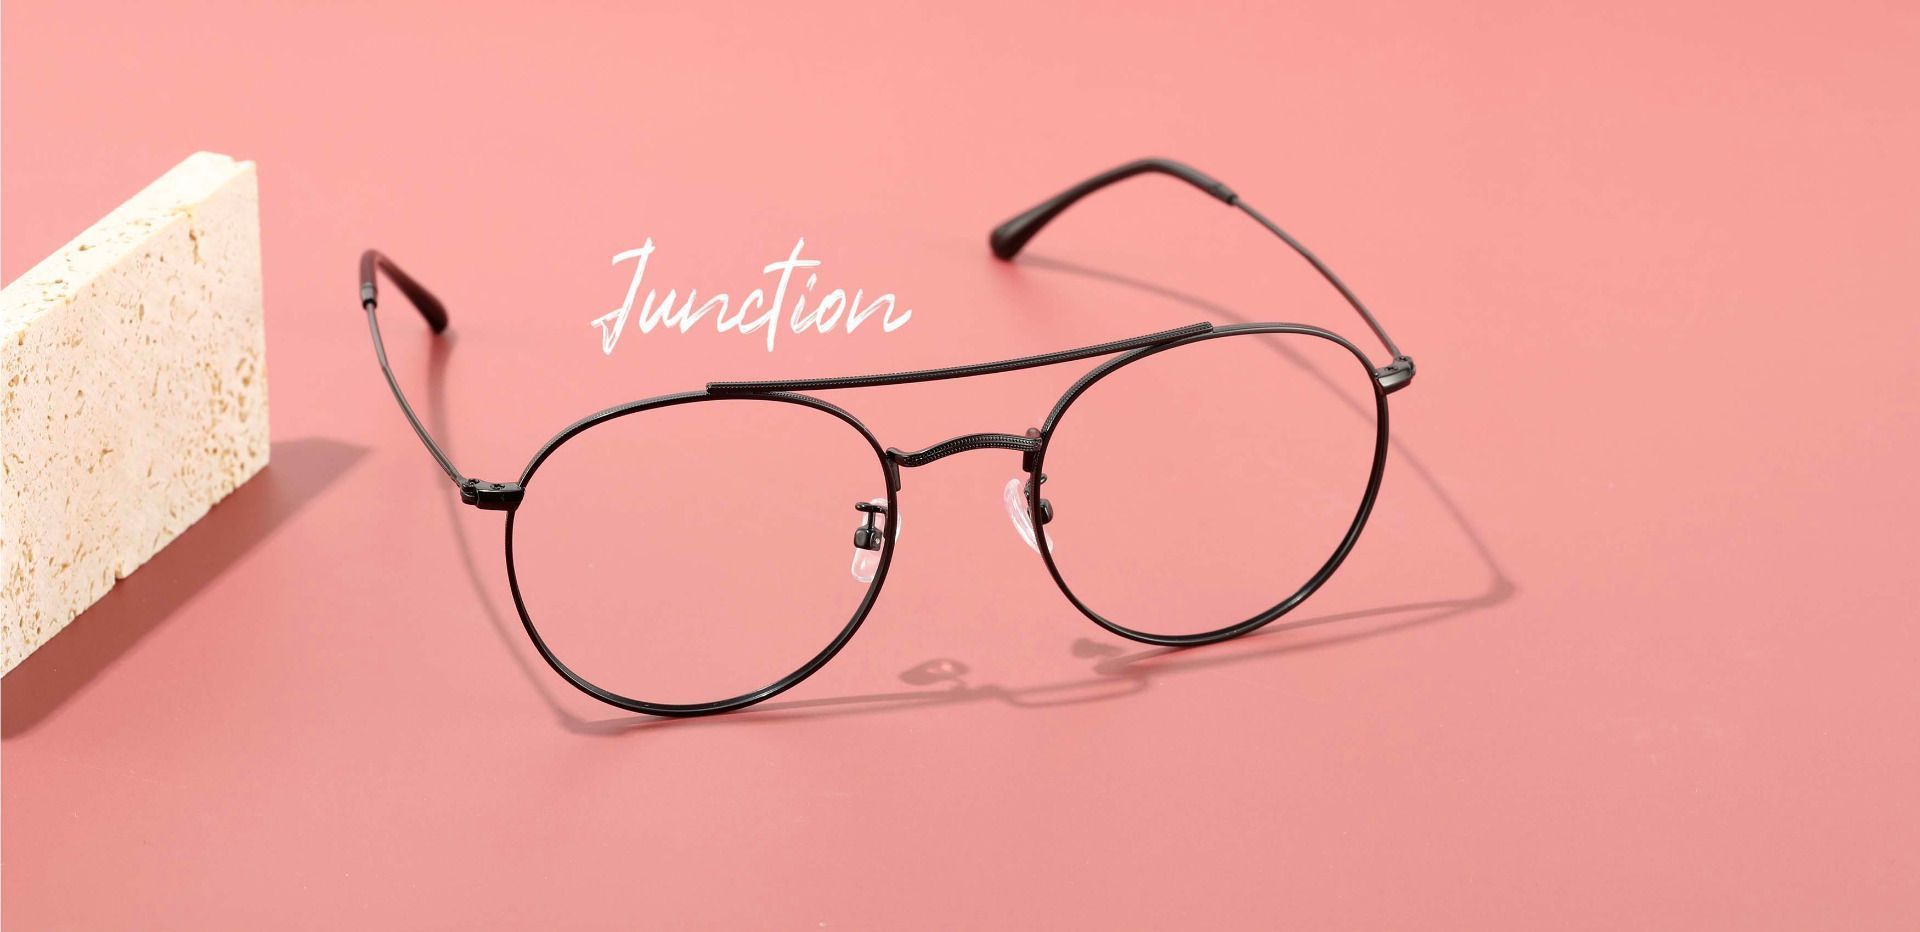 Junction Aviator Eyeglasses Frame - Black